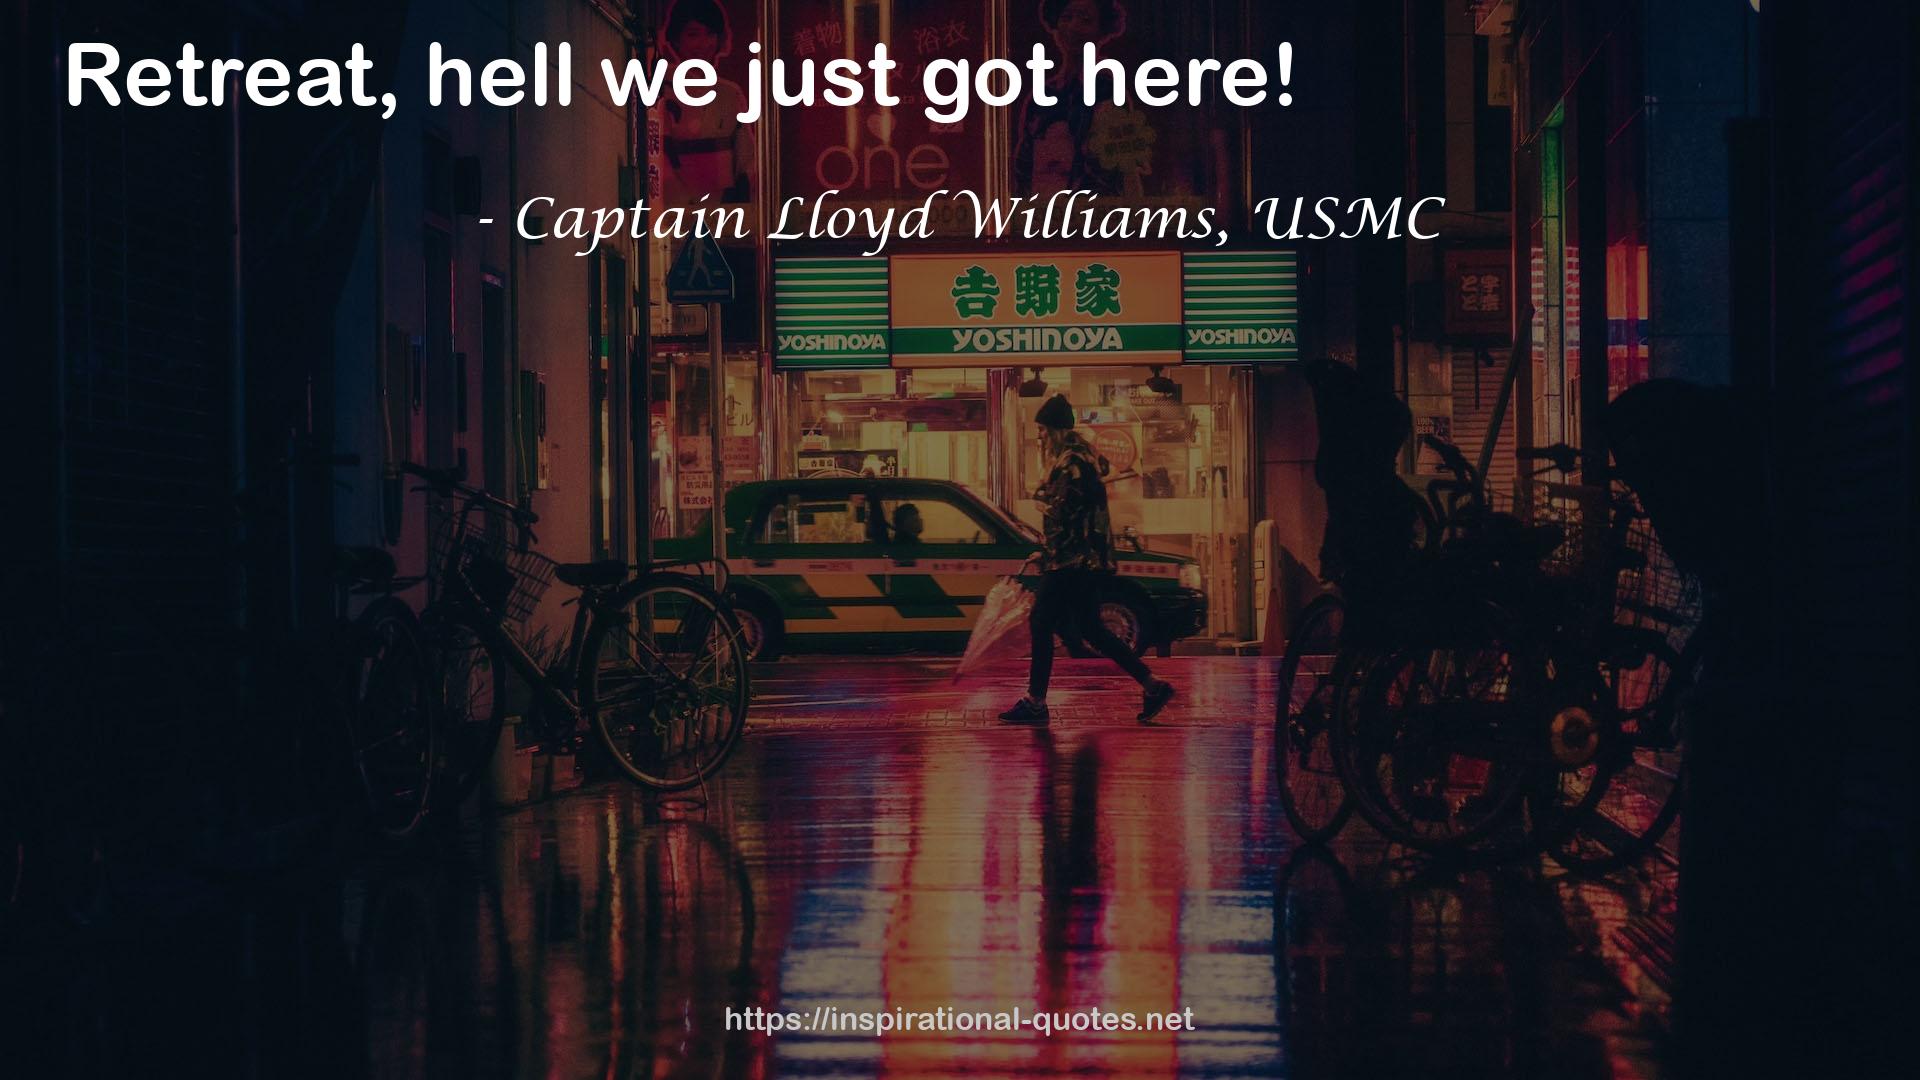 Captain Lloyd Williams, USMC QUOTES